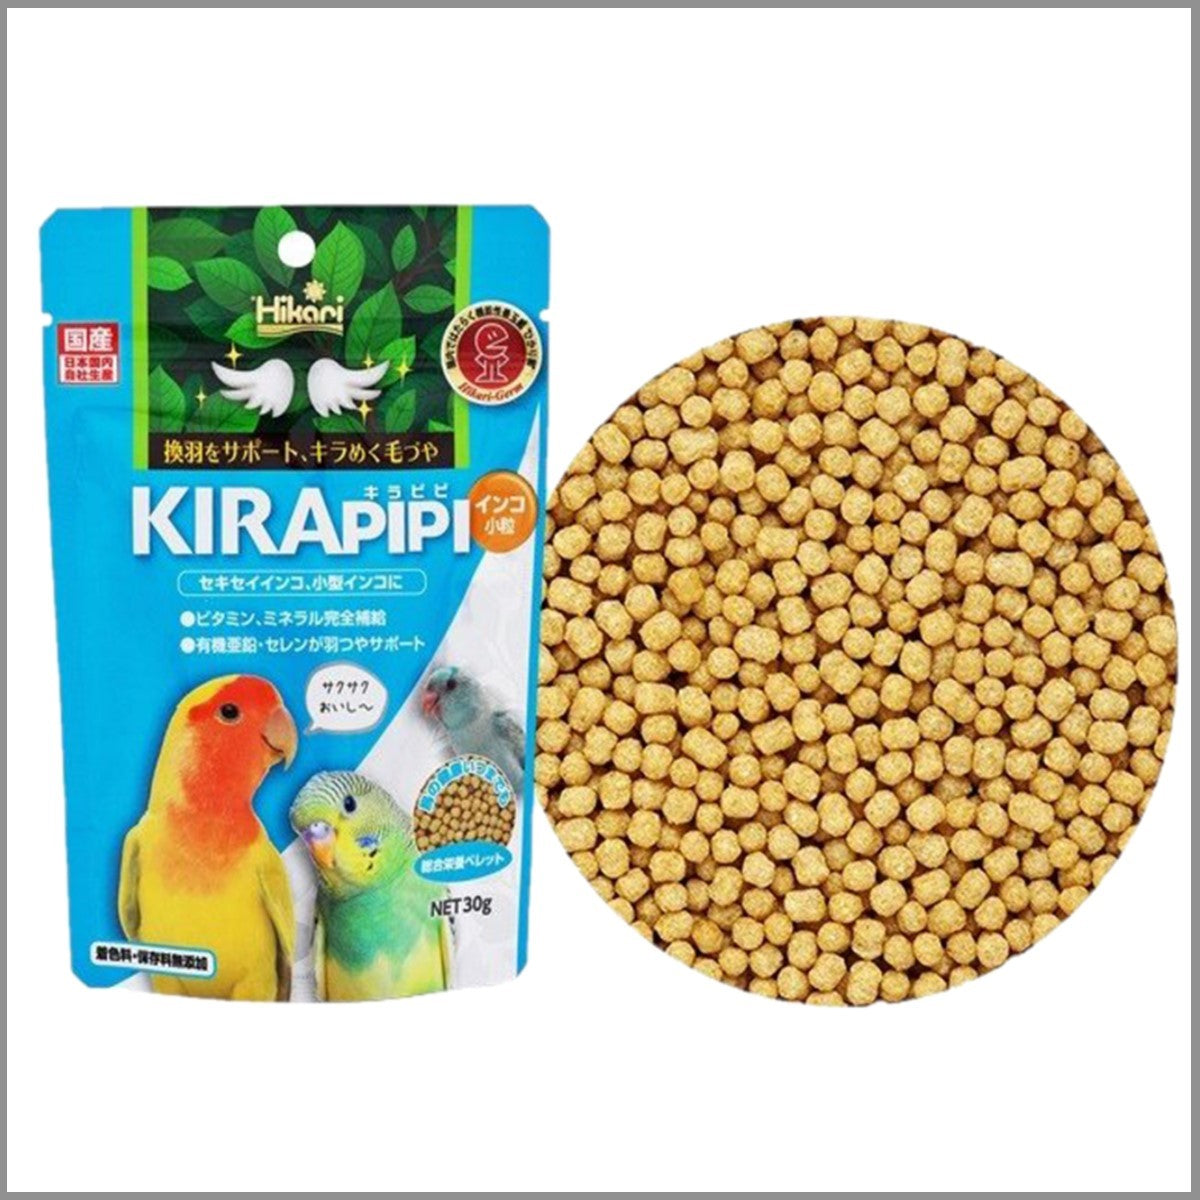 Hikari Kirapipi parakeet small grain(30g)_小型鸚鵡糧小粒(30克)